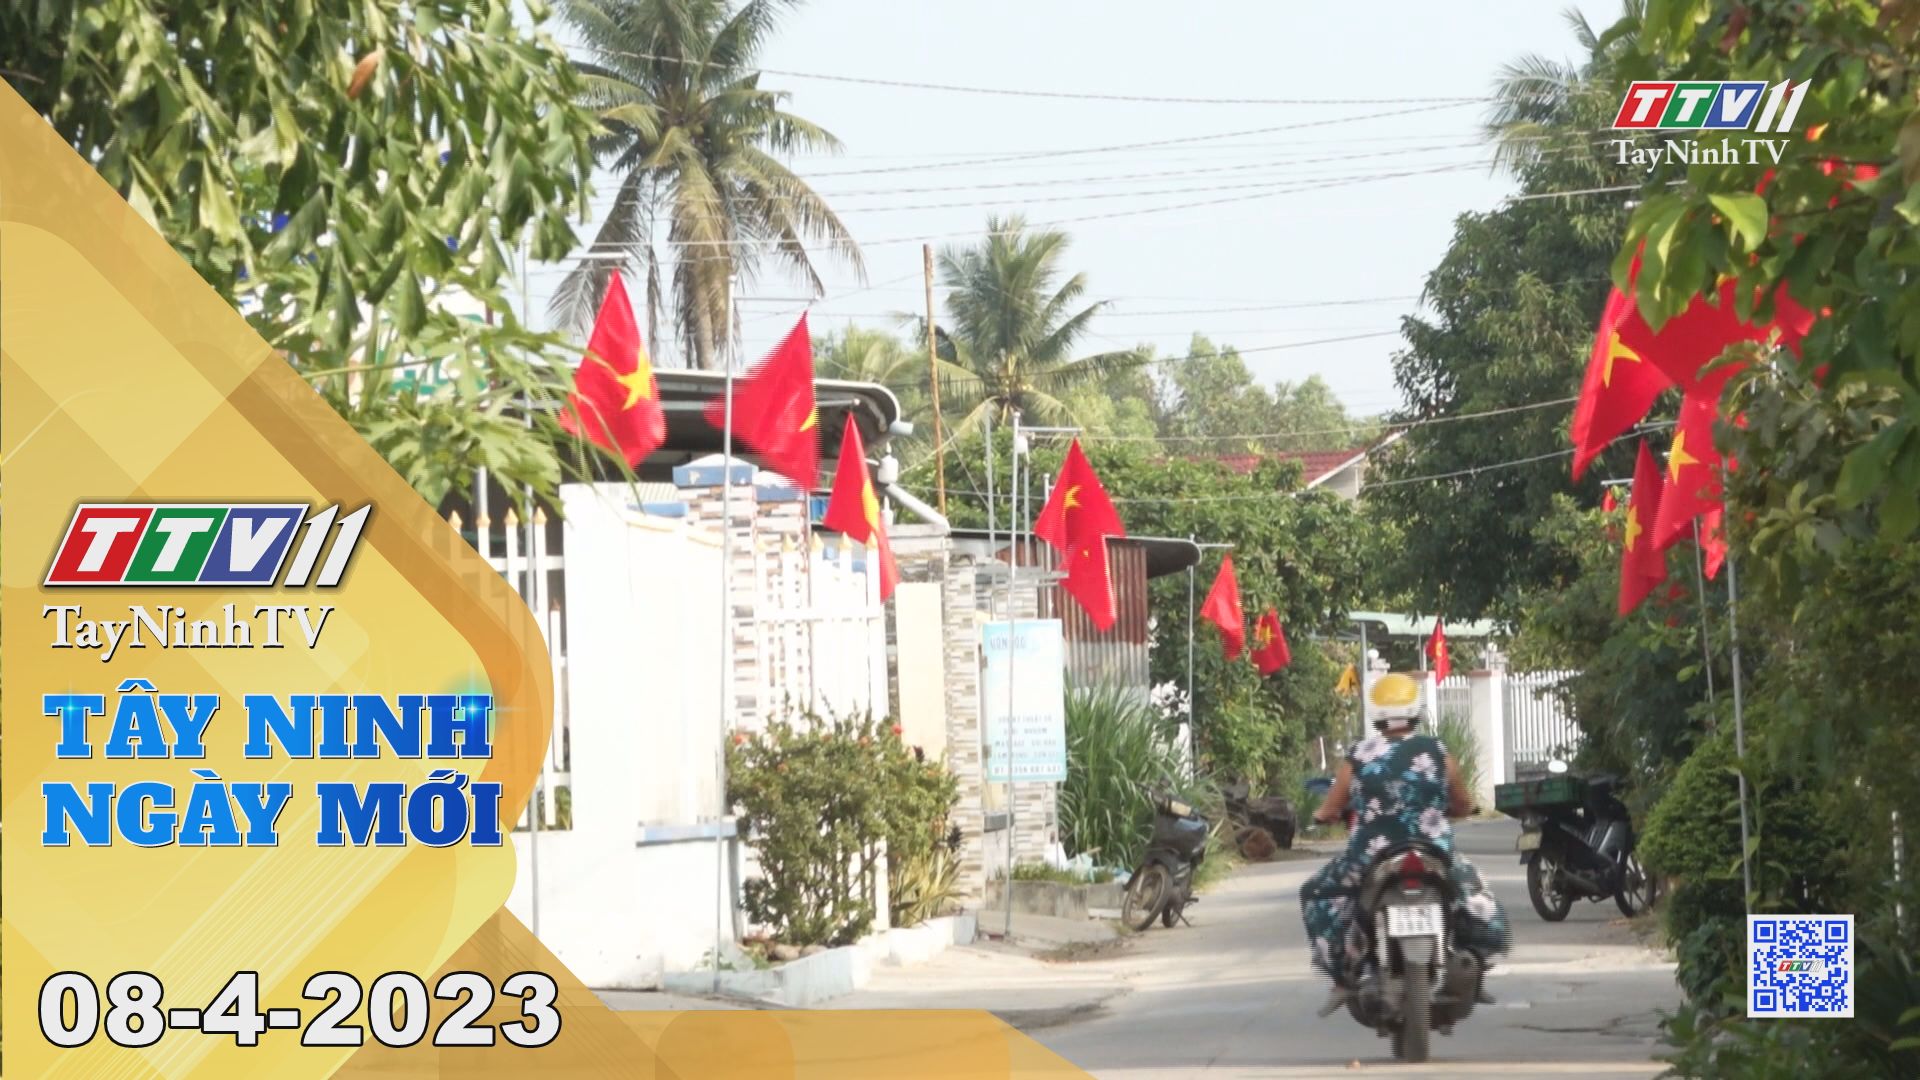 Tây Ninh ngày mới 08-4-2023 | Tin tức hôm nay | TayNinhTV